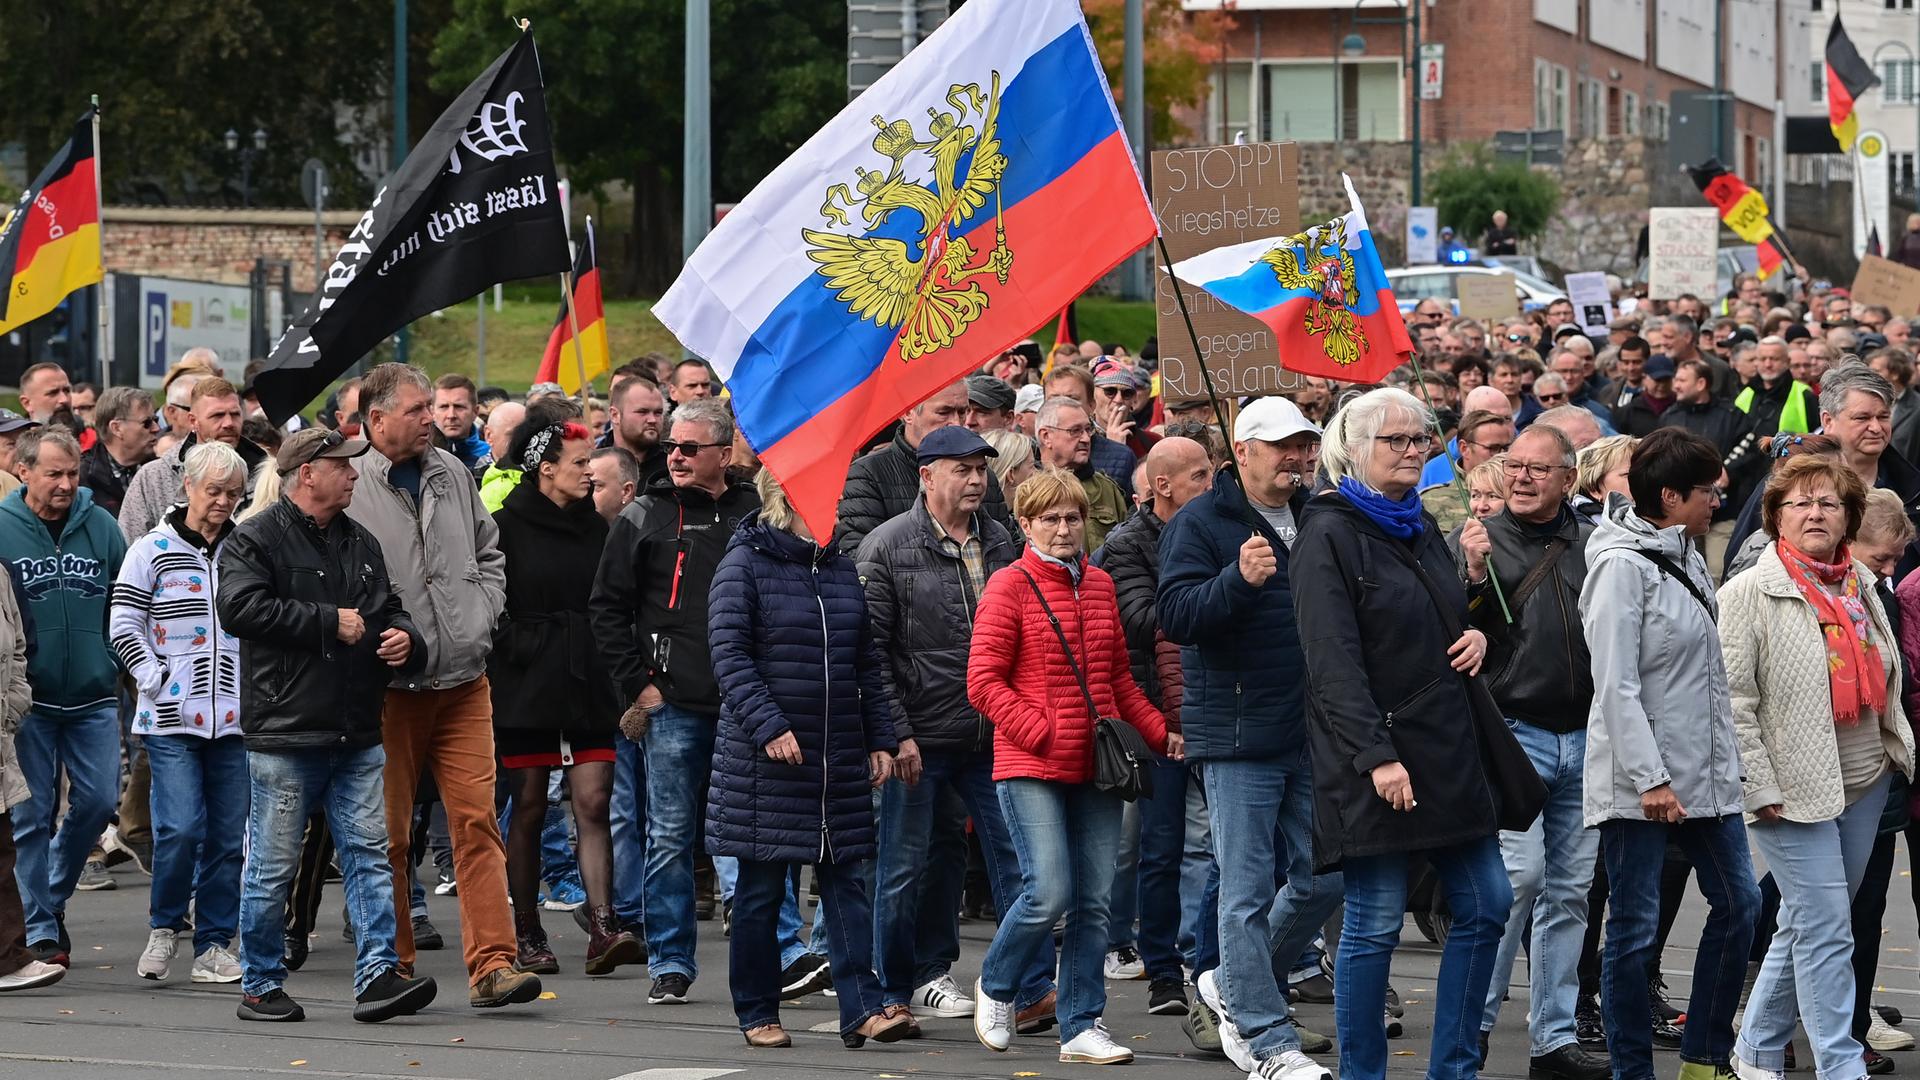 Viele Menschen nehmen an einer Protest-Demonstration im Stadtzentrum teil und schwenken dabei unter anderem auch Russland-Fahnen. Erneut sind an diesem Montag in Frankfurt (Oder) Hunderte Menschen zu einer Protest-Demonstration auf die StraÃe gegangen. Anlass waren die Energiekrise, der Ukraine-Krieg und die Corona-Politik. Mit Trommeln, Trillerpfeifen, Deutschland-Fahnen und russischen Flaggen zogen sie am Tag der Deutschen Einheit durch die Innenstadt, wie ein dpa-Reporter berichtete. Er schätzte die Teilnehmerzahl auf etwa 2000. Auf Transparenten stand unter anderem Â«Nur Frieden ist ein SiegÂ» oder waren Friedenstauben abgebildet.